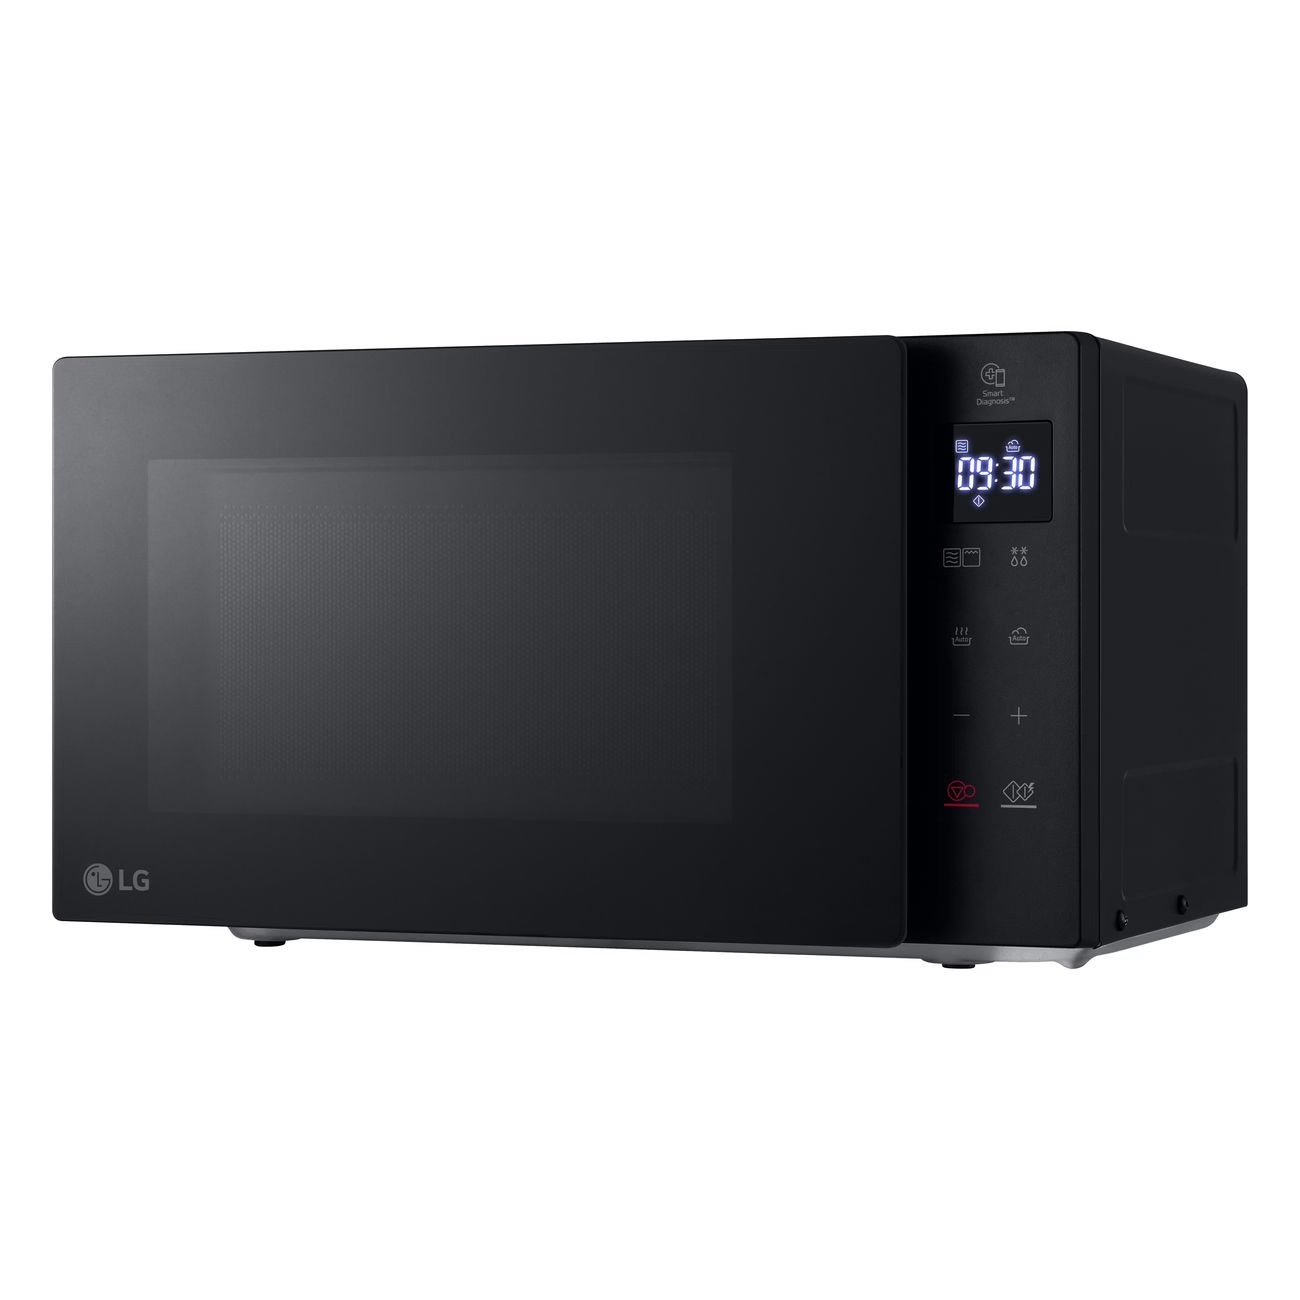 Микроволновая печь с грилем LG NeoChef MH6032GAS черный, купить в Москве, цены в интернет-магазинах на Мегамаркет